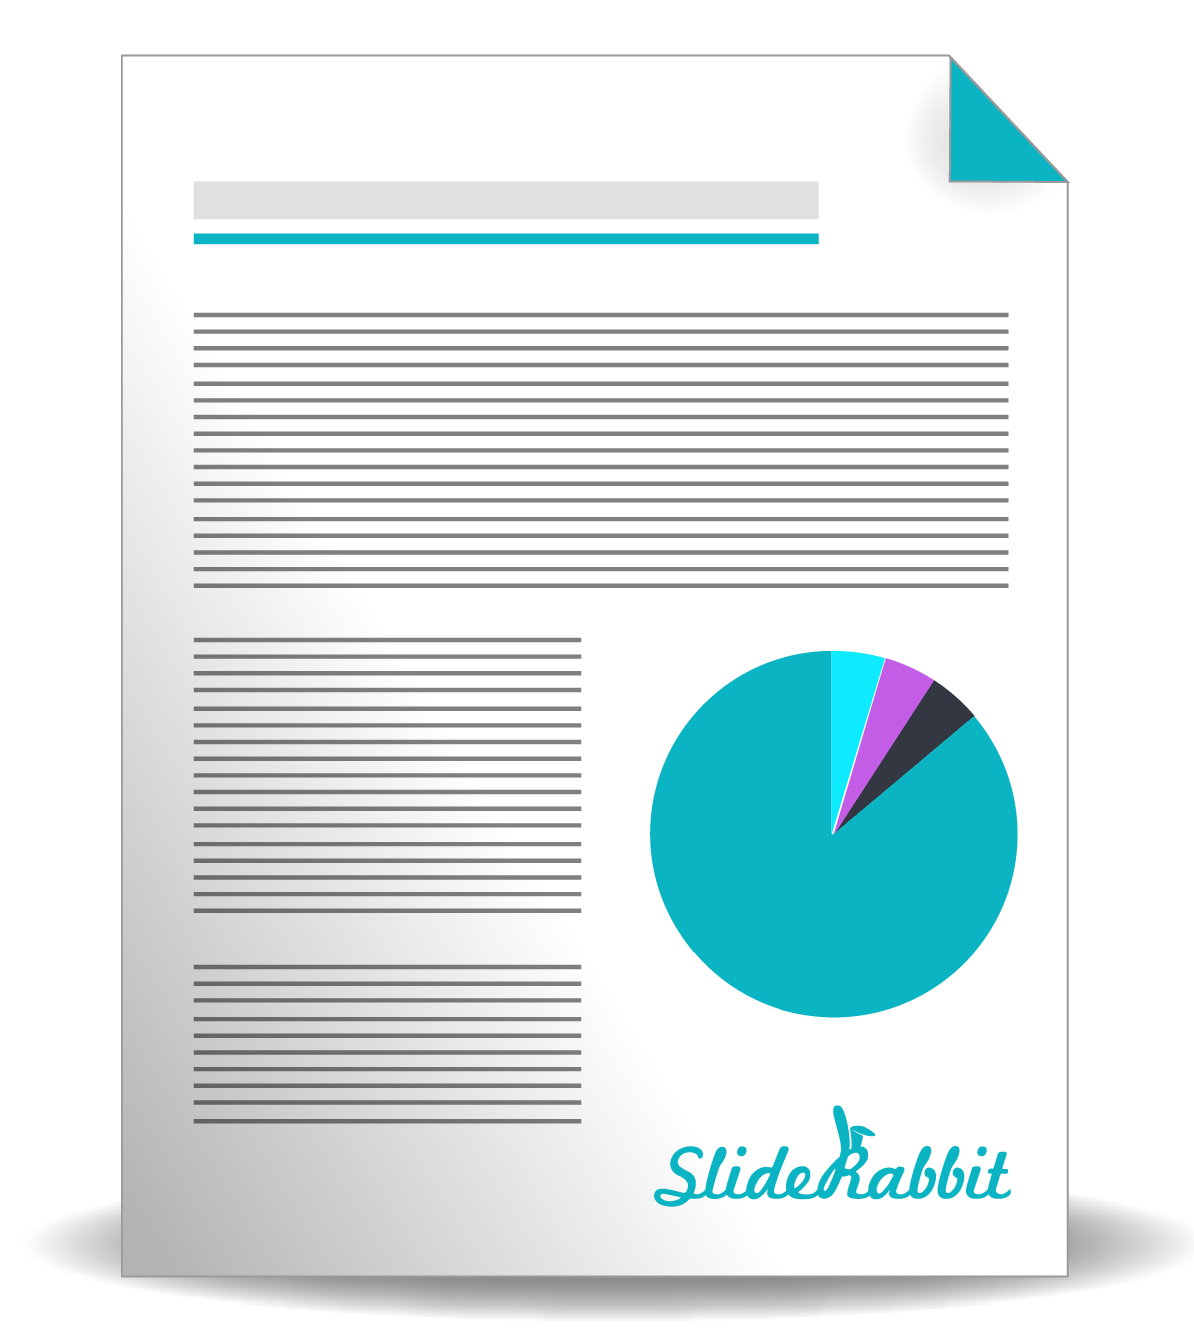 Presentation Software SlideRabbit VisualSugar Presentation Design Powerpoint